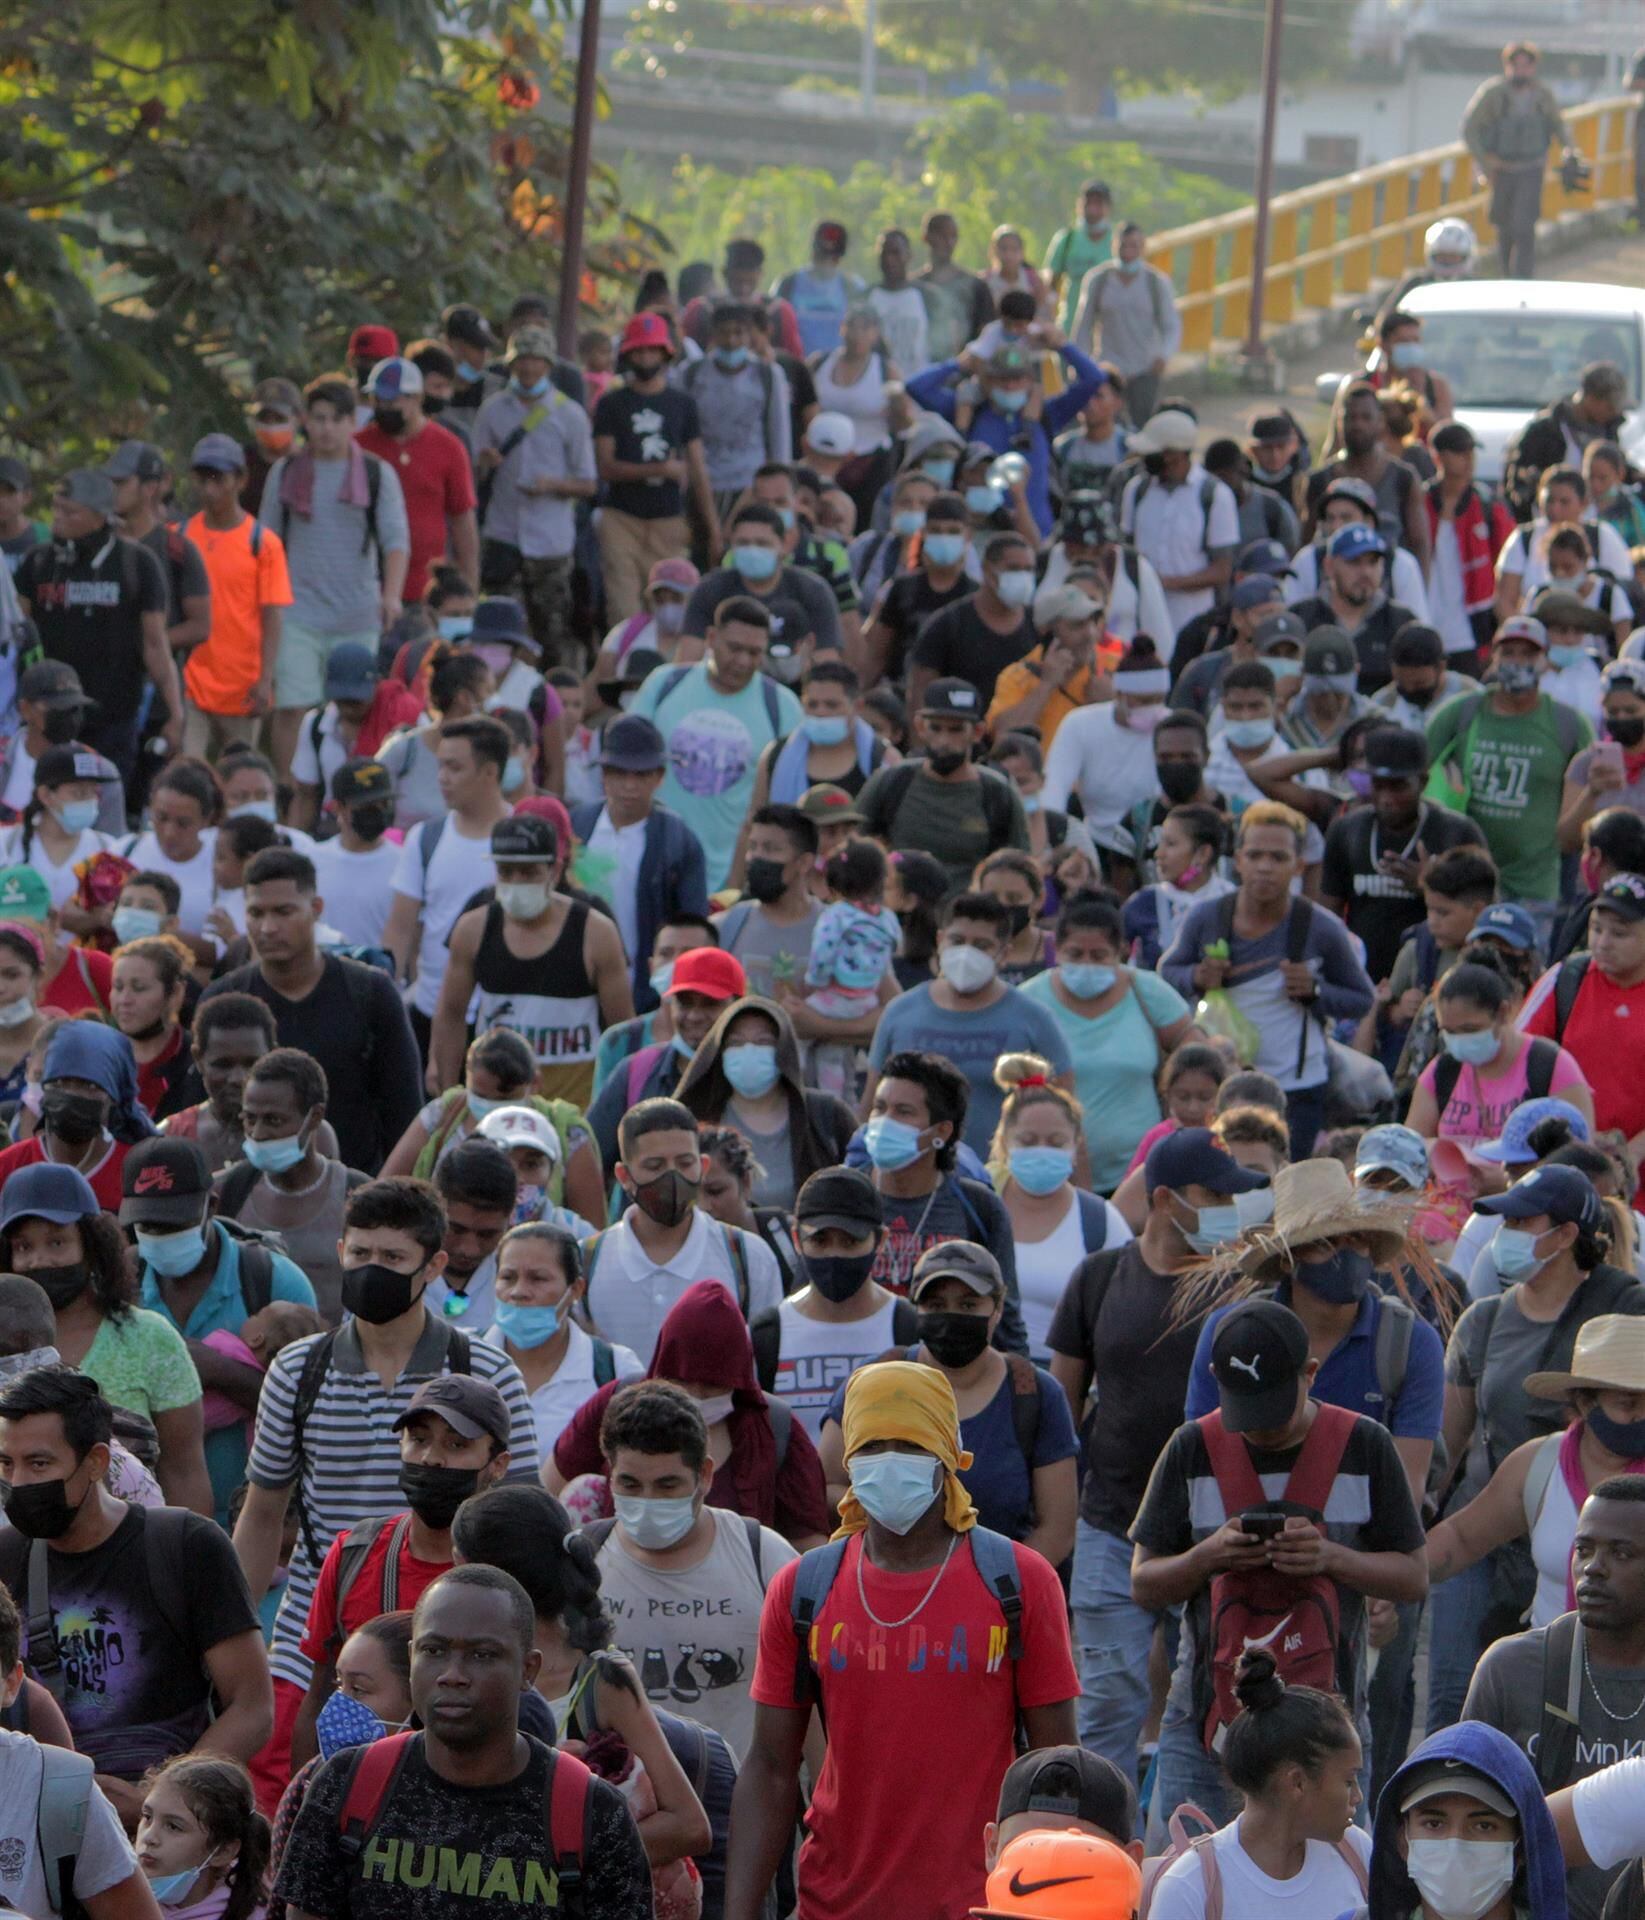 “Somos testigos del trato inhumano que el Estado mexicano da a los migrantes”: EZLN